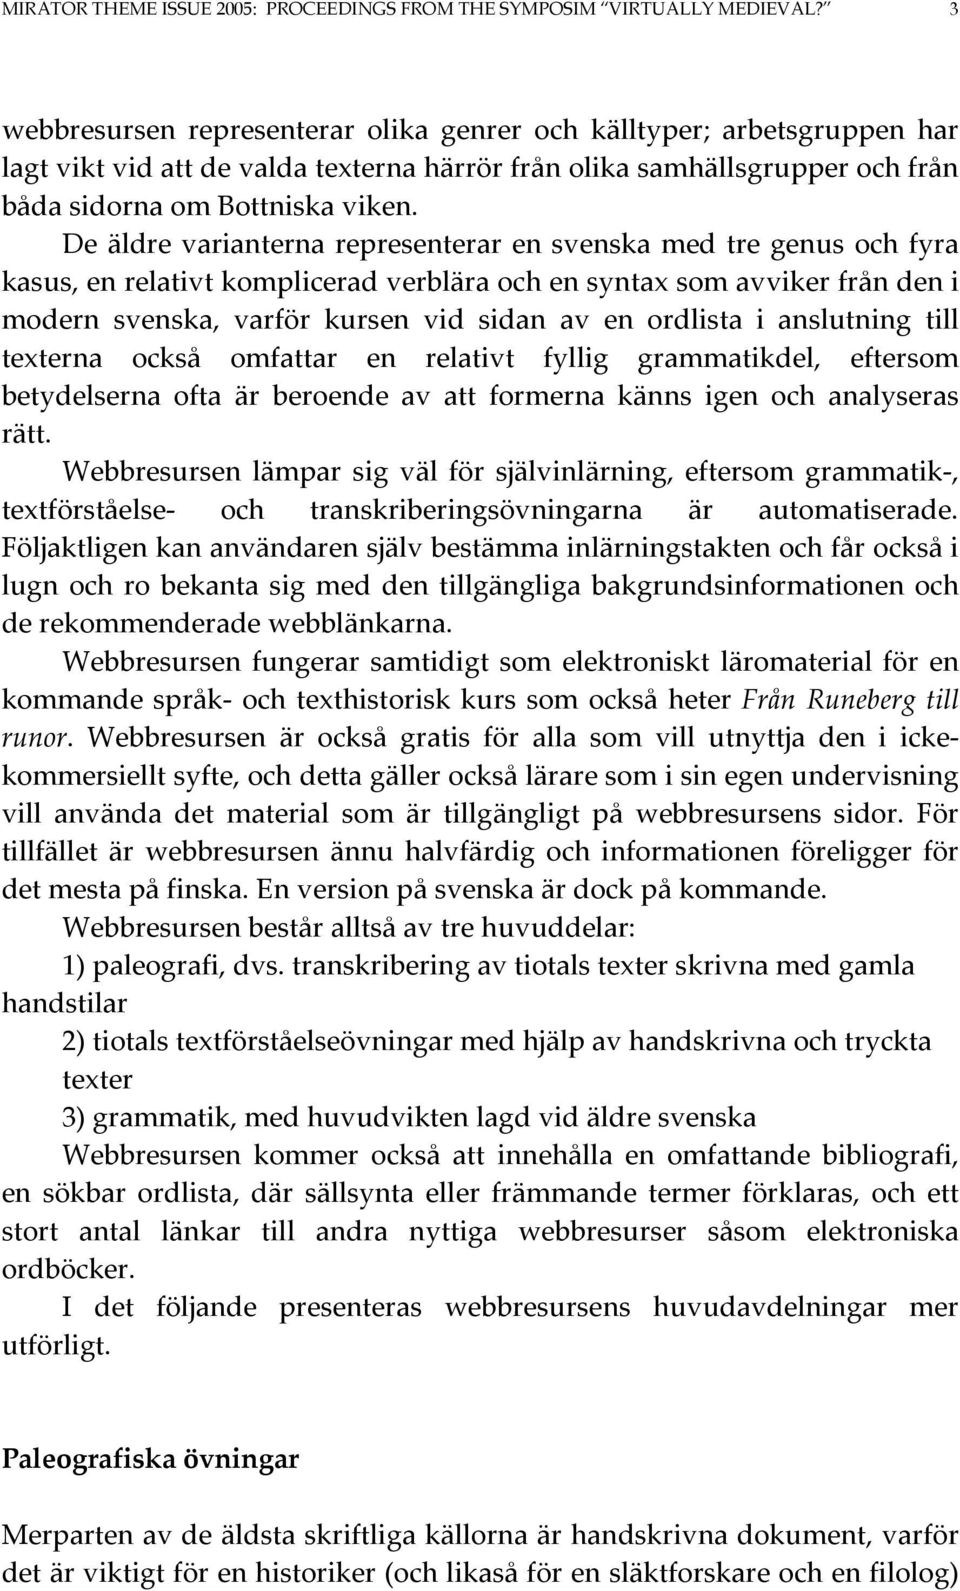 De äldre varianterna representerar en svenska med tre genus och fyra kasus, en relativt komplicerad verblära och en syntax som avviker från den i modern svenska, varför kursen vid sidan av en